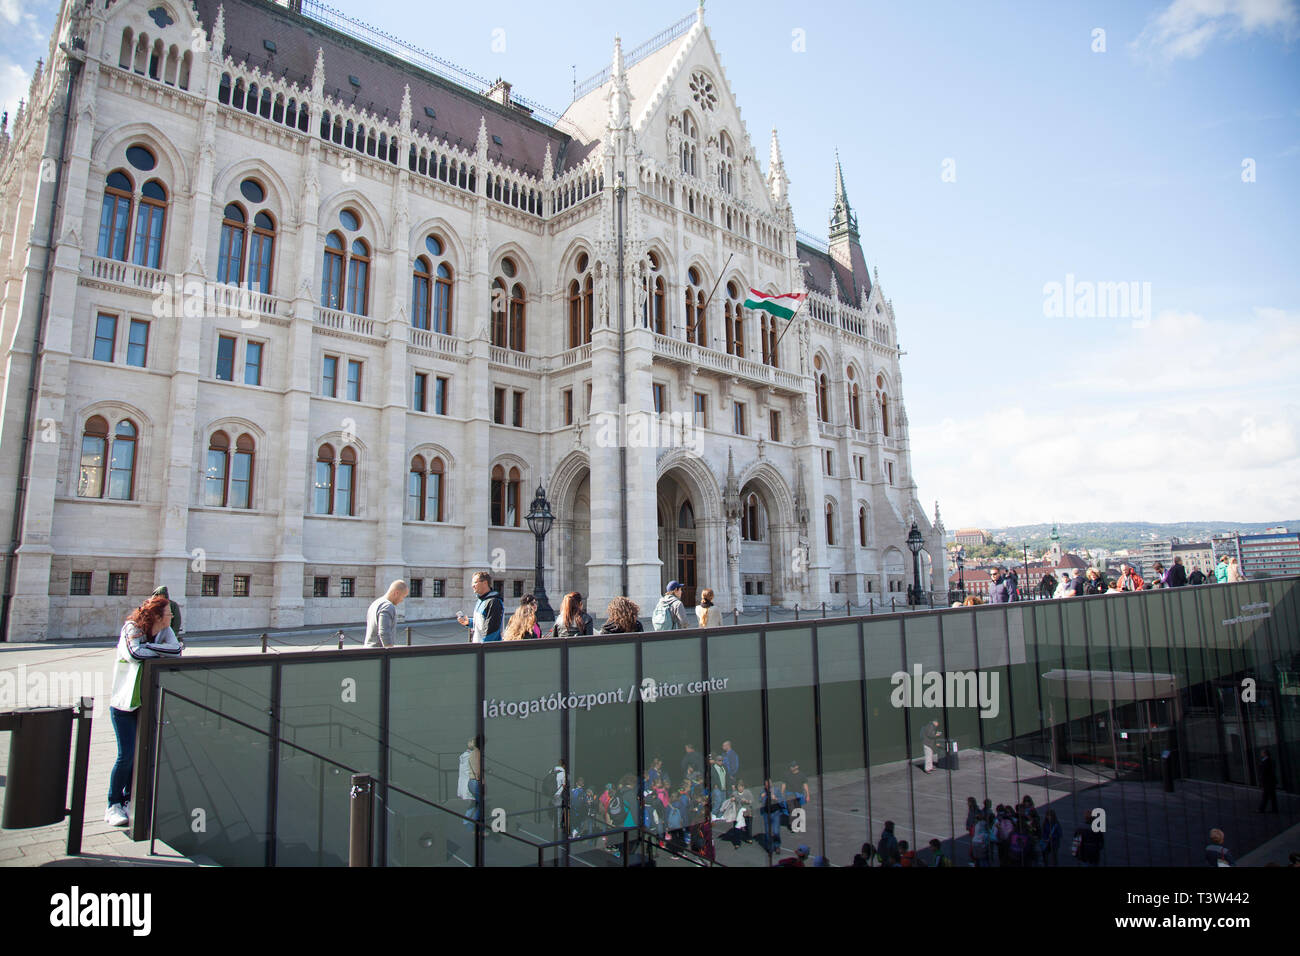 BUDAPEST, Ungarn - 22. SEPTEMBER 2017: Eingang zum Besucherzentrum im ungarischen Parlament Gebäude. in Budapest. Stockfoto